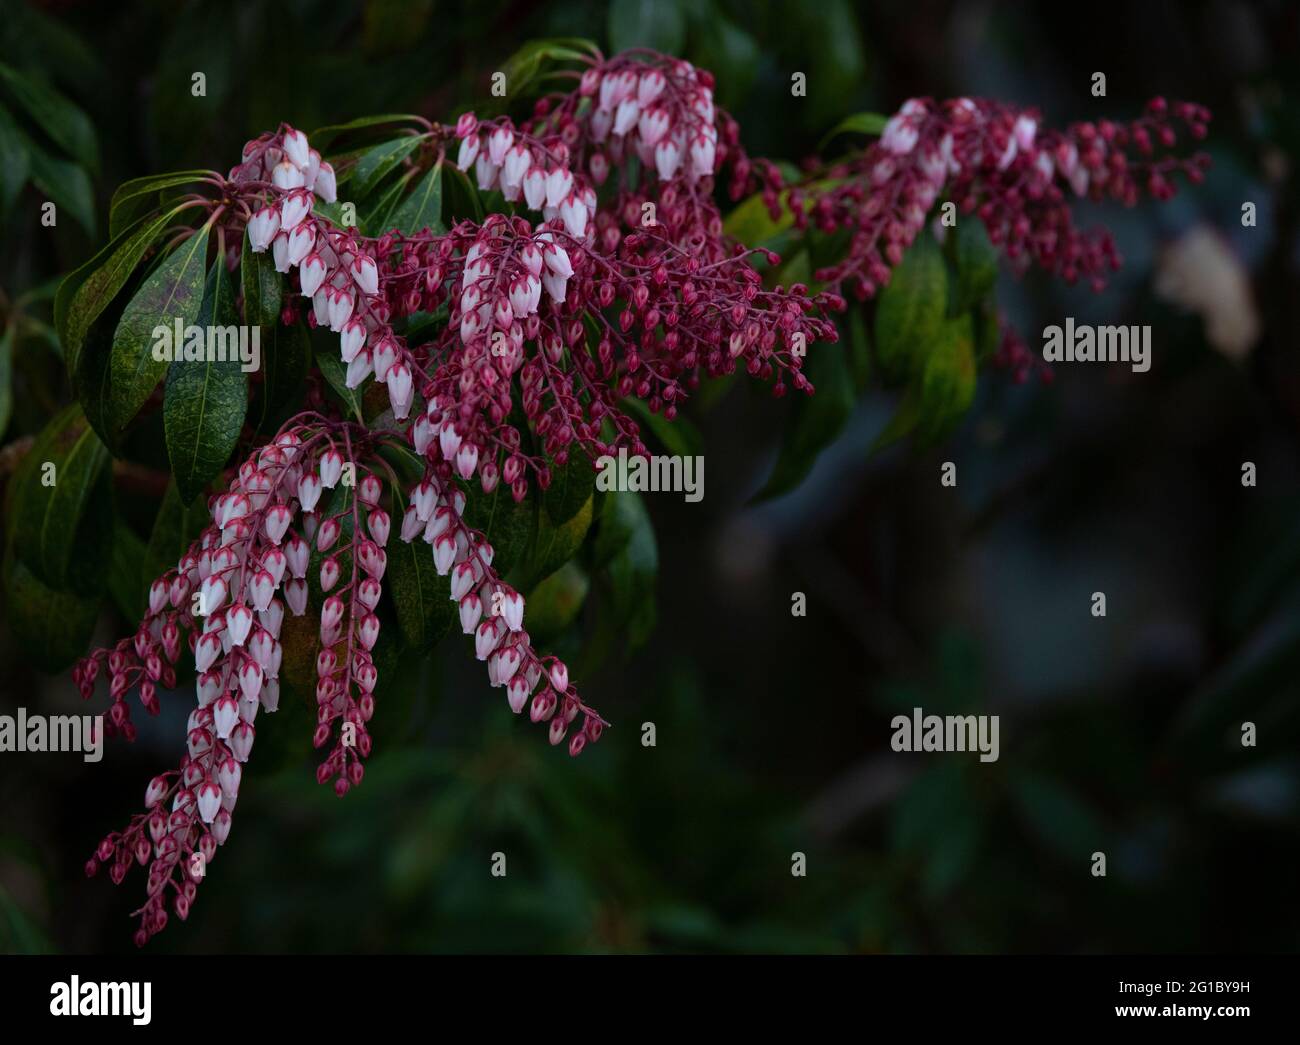 Pieris shrub flowering, up close Stock Photo